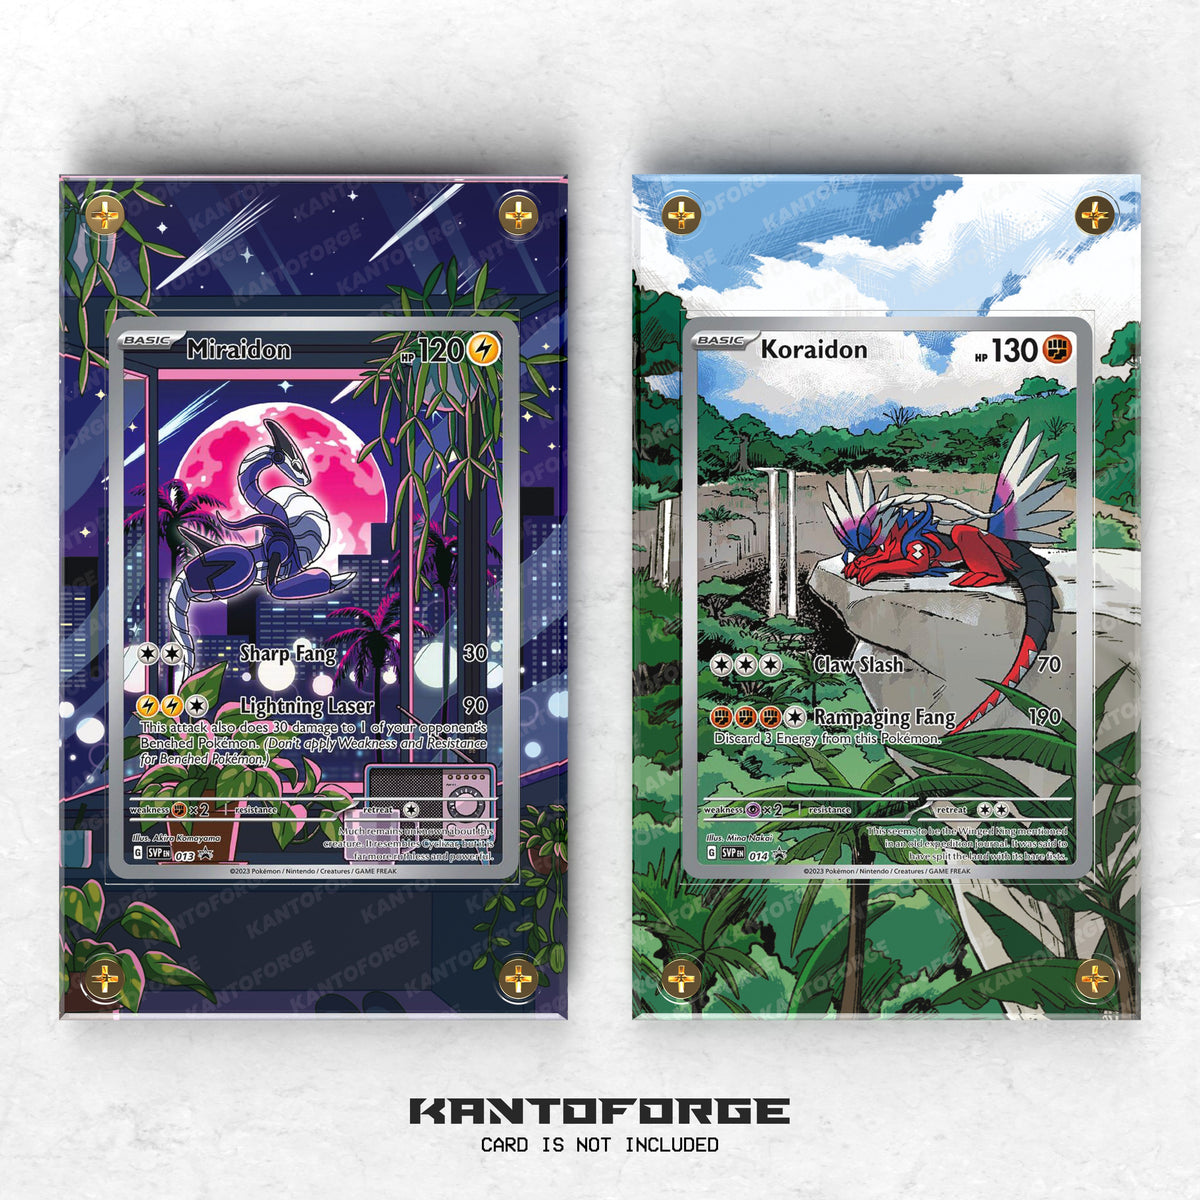 Pokemon TCG stunning Miraidon and Koraidon promo cards have fans